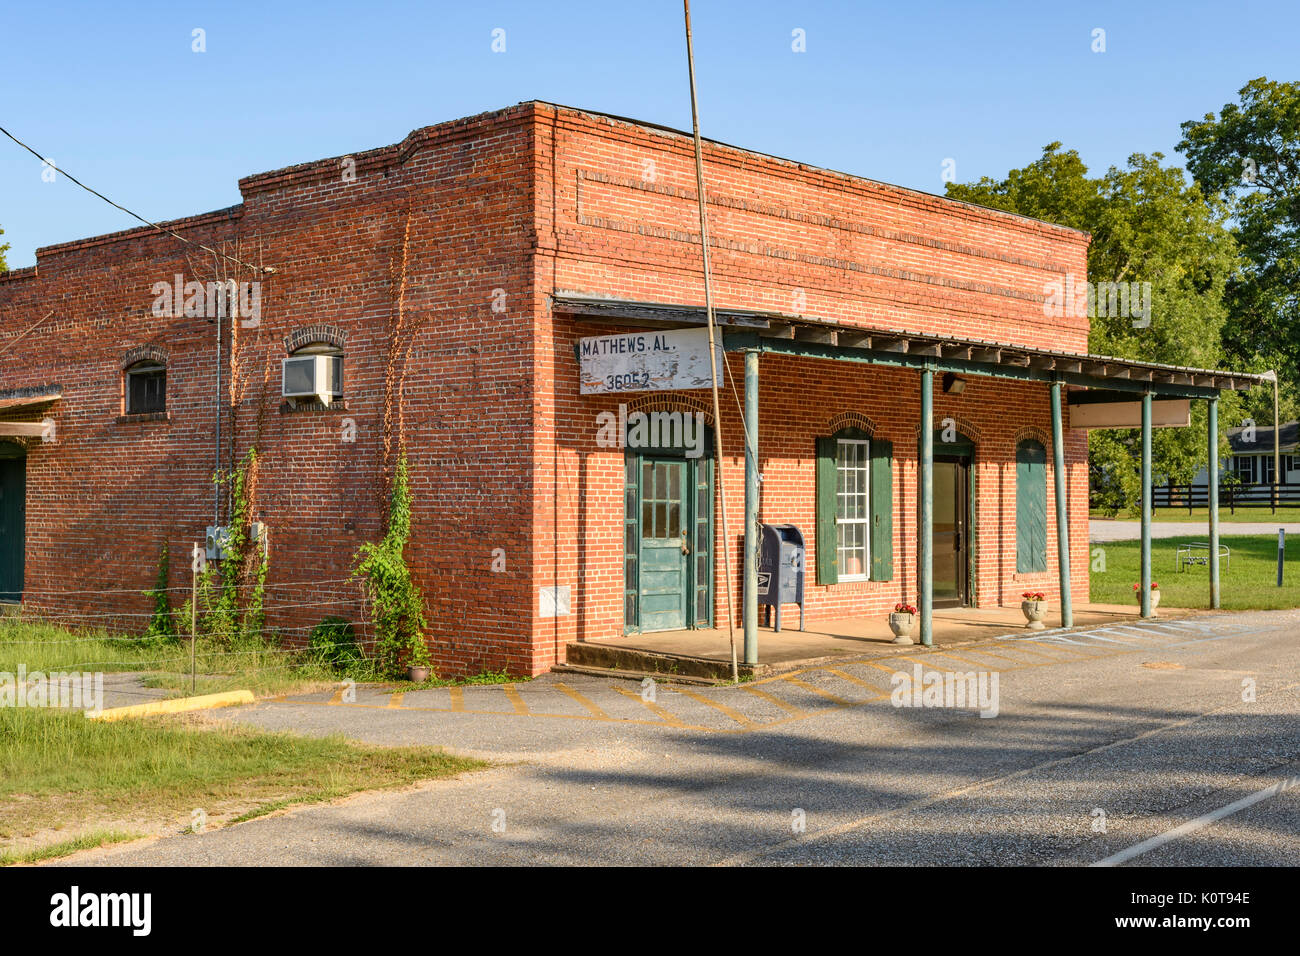 Le petit bureau de poste de Matthews, Alabama, Etats-Unis, c'est typique d'une petite ville ou une collectivité rurale dans le sud des États-Unis. Banque D'Images